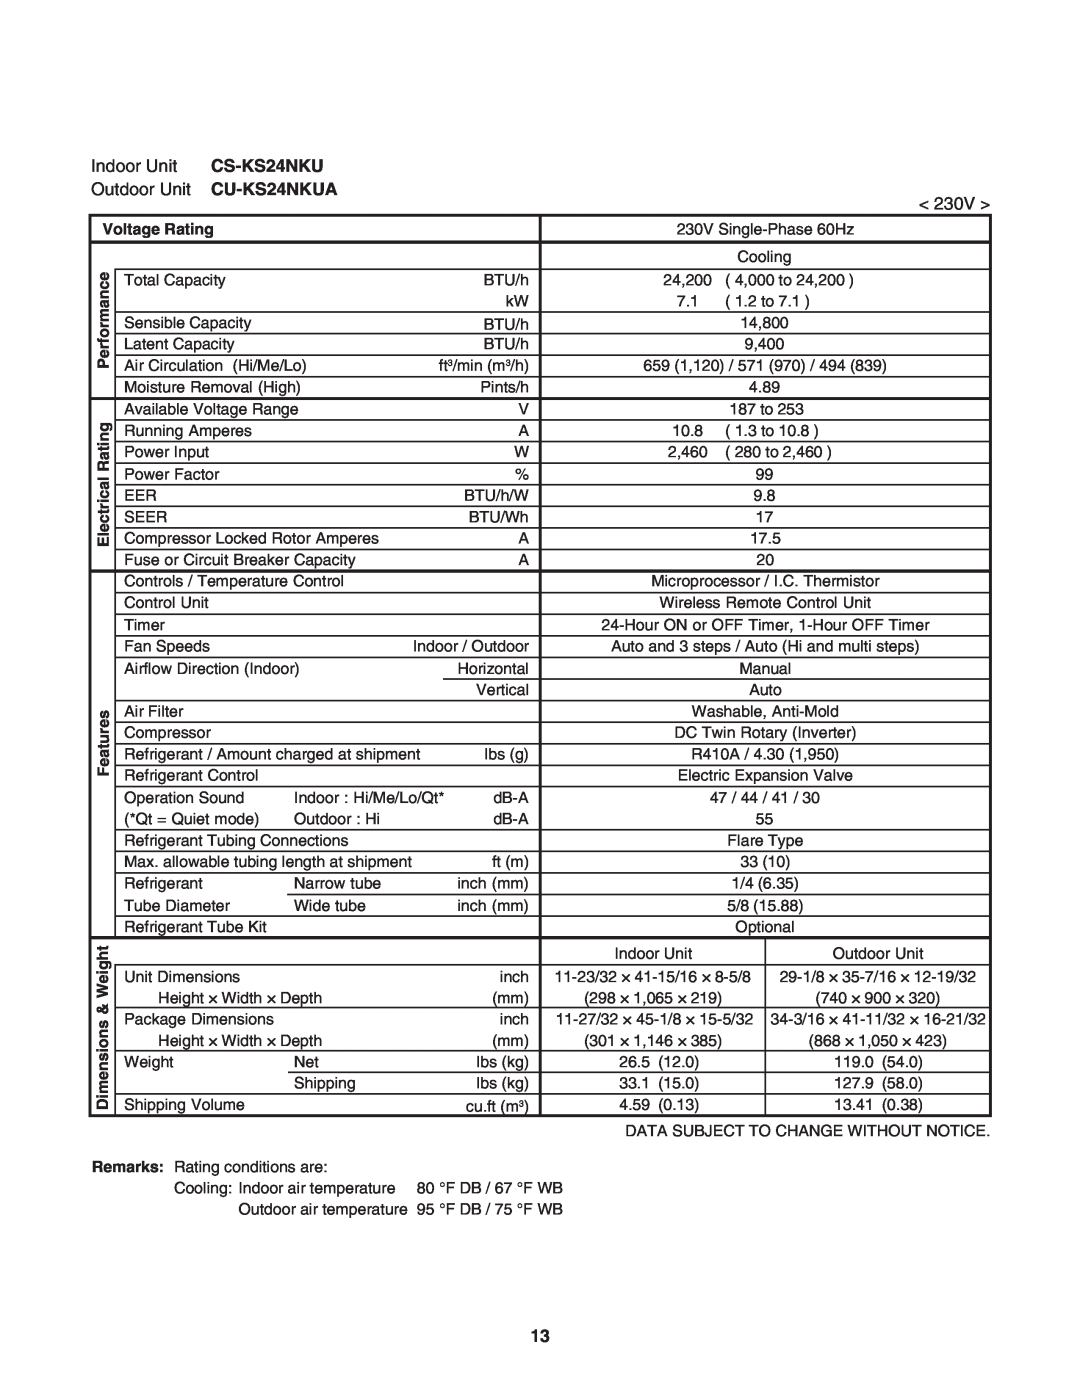 Panasonic CS-KS18NKU, CU-KS18NKU Indoor Unit, CS-KS24NKU, Outdoor Unit CU-KS24NKUA, < 230V >, Voltage Rating, Dimen 